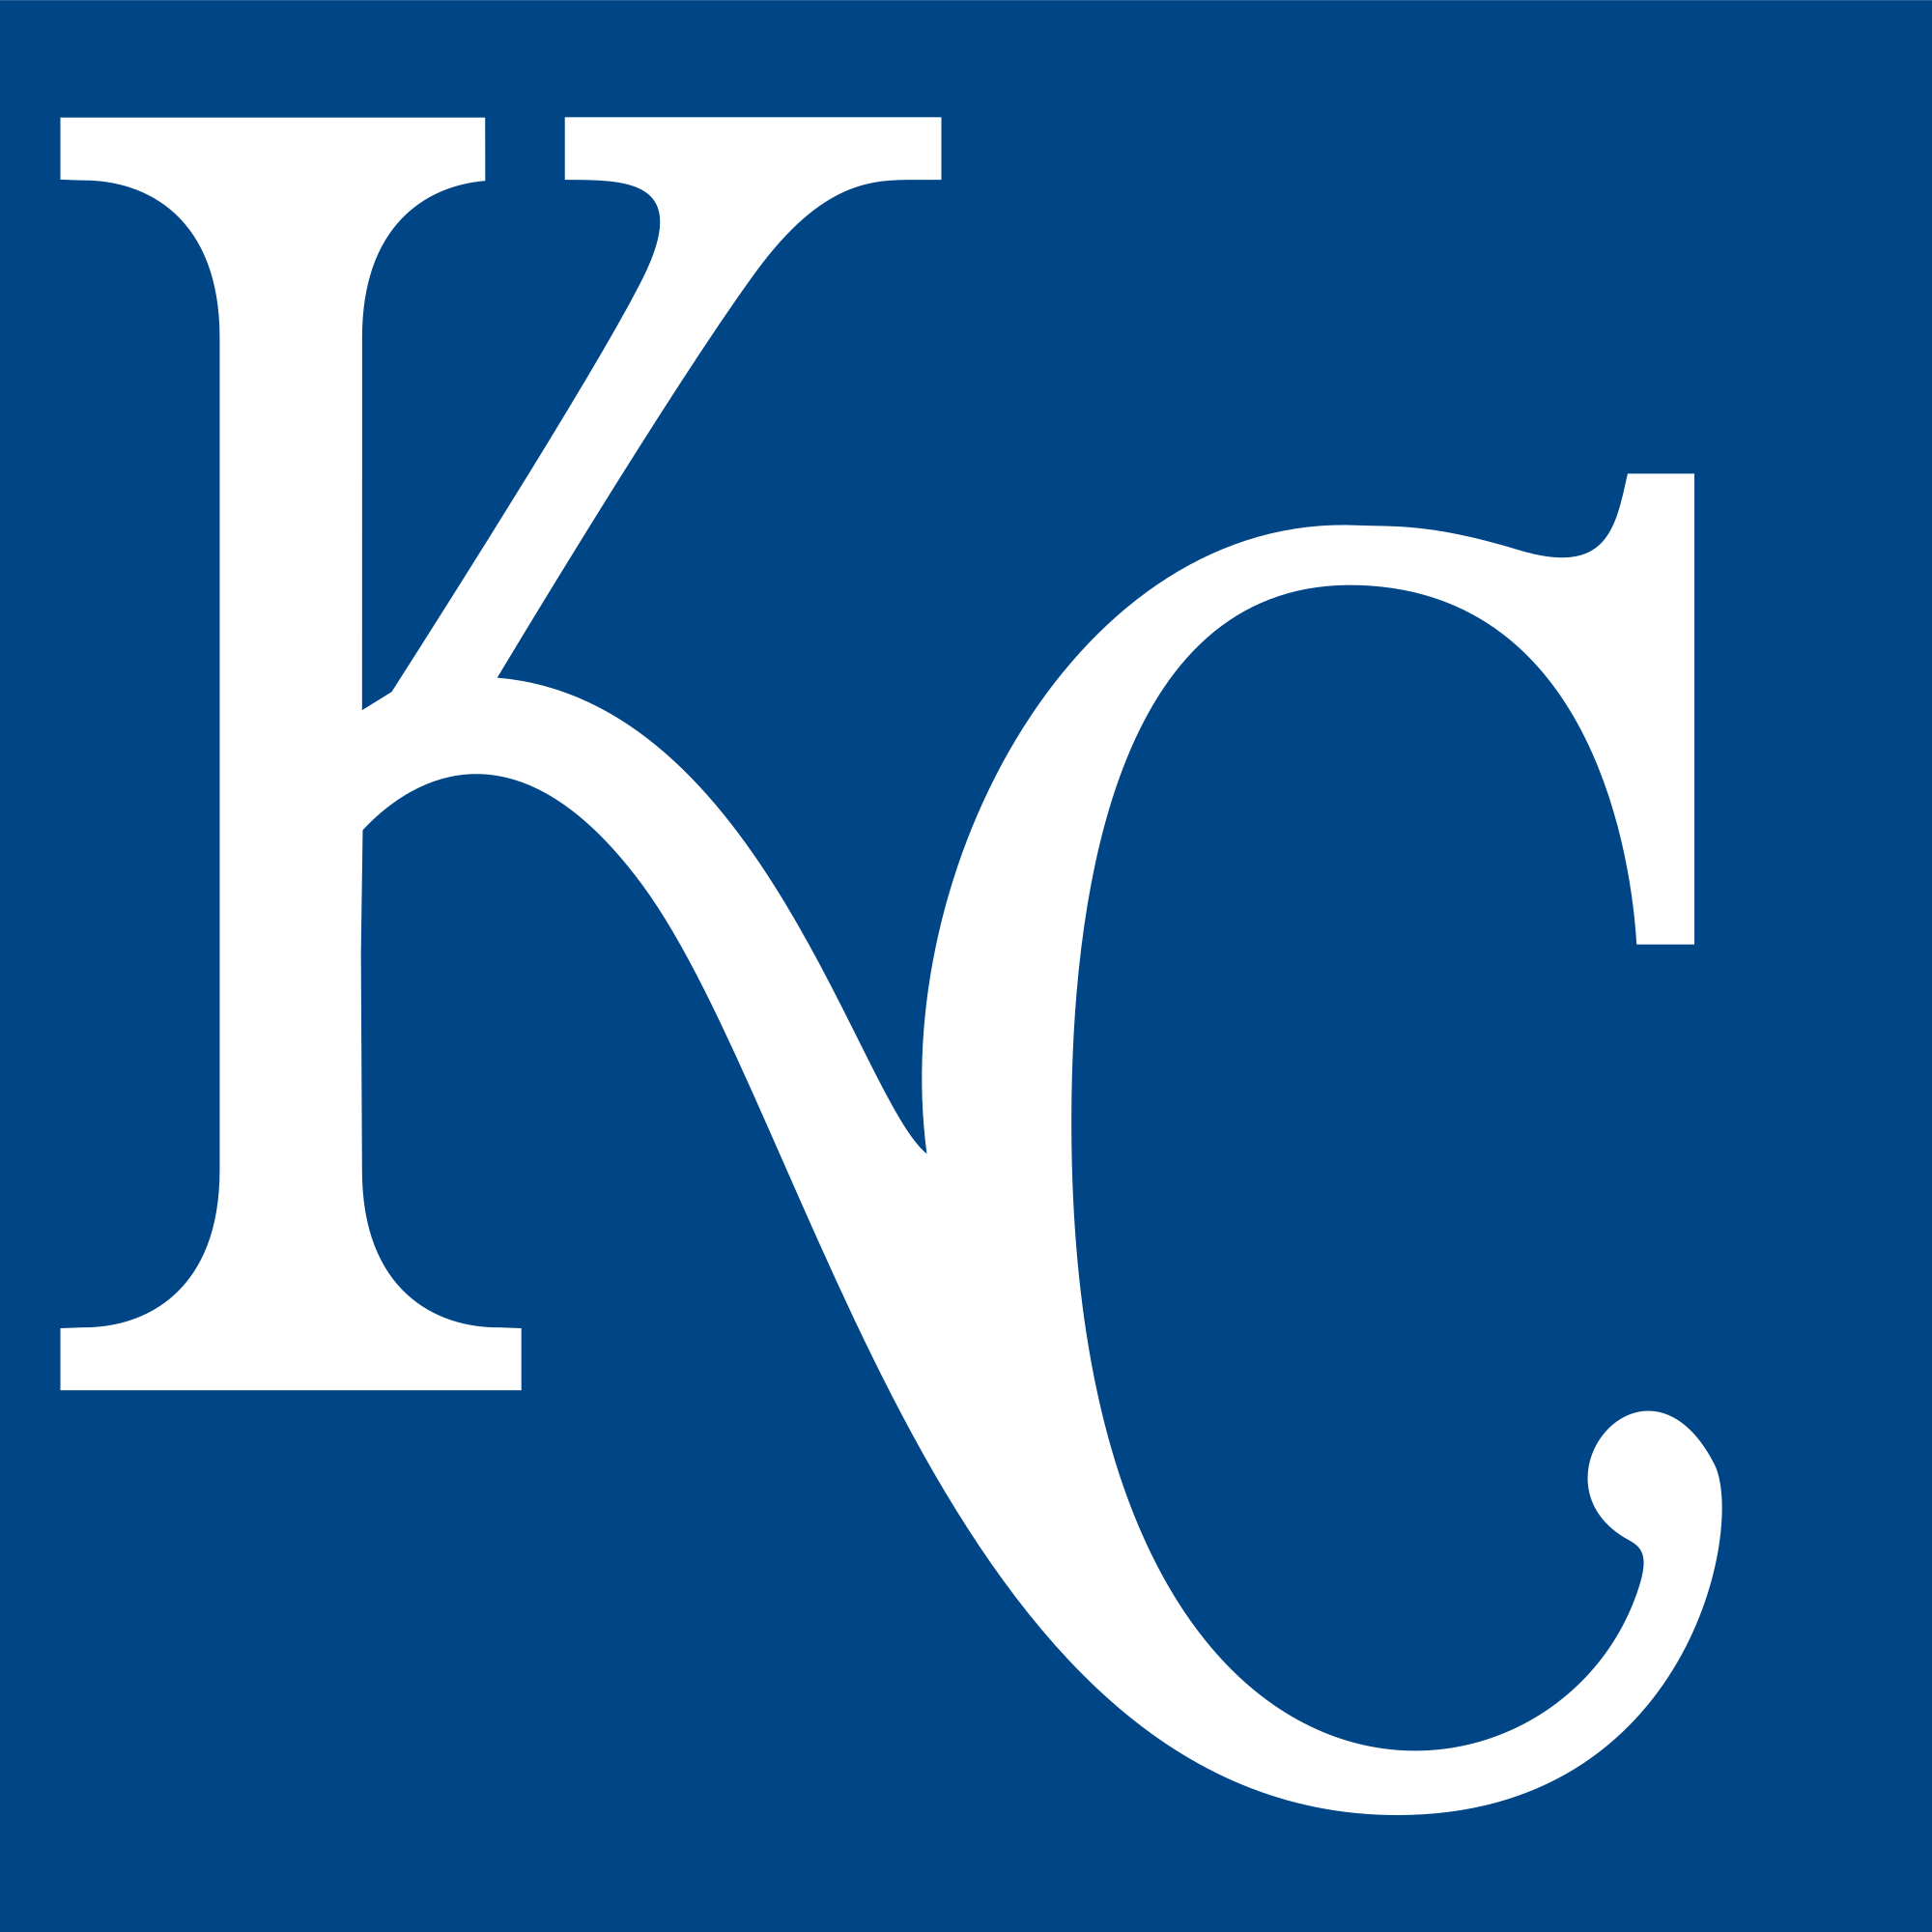 Royals Logo - File:Kansas City Royals Insignia.svg - Wikimedia Commons